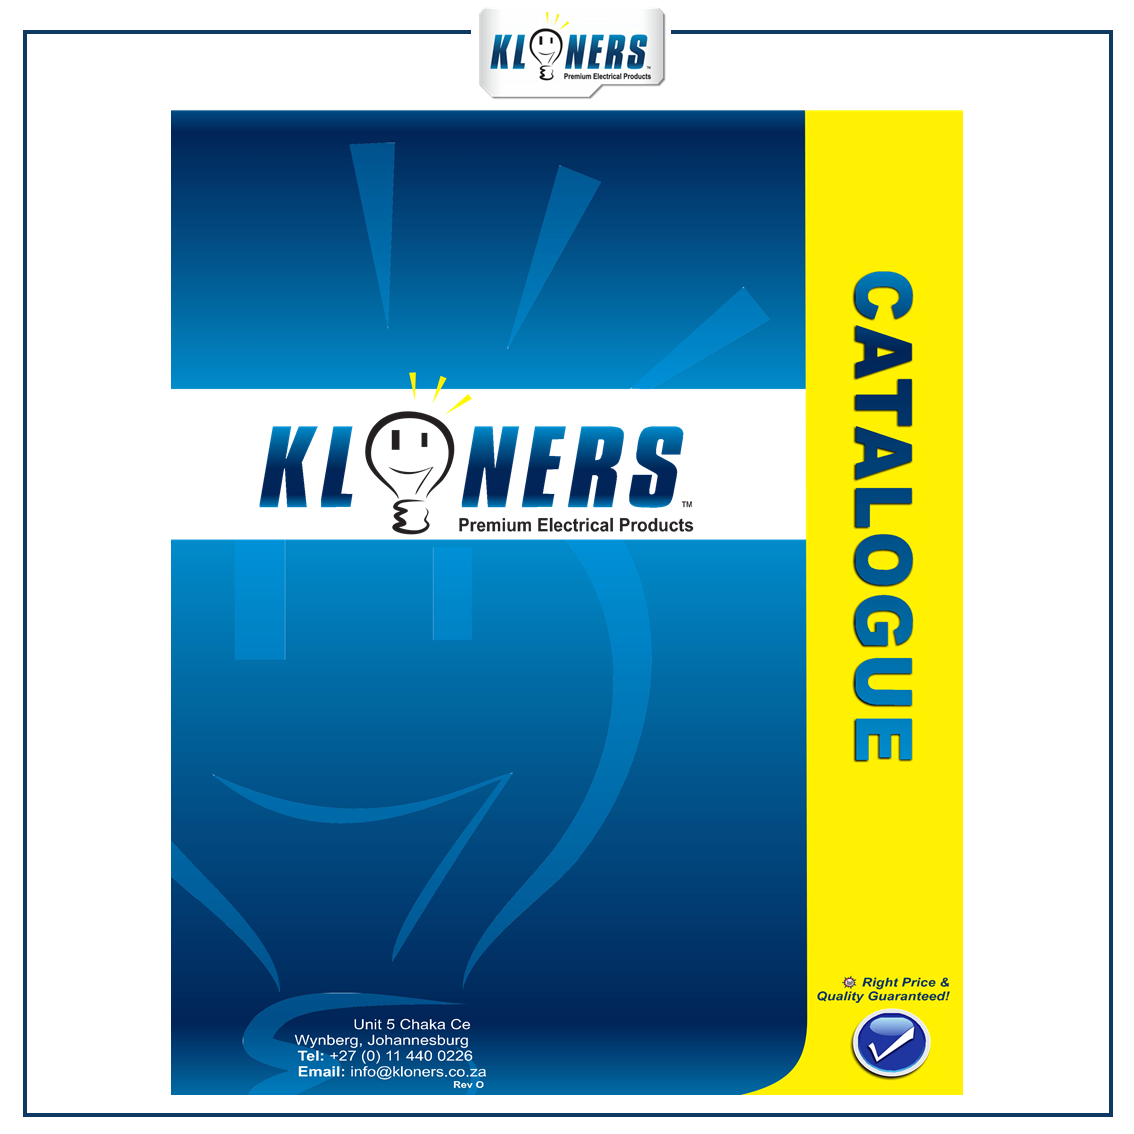 KLONERS - Catalogue Catalogue